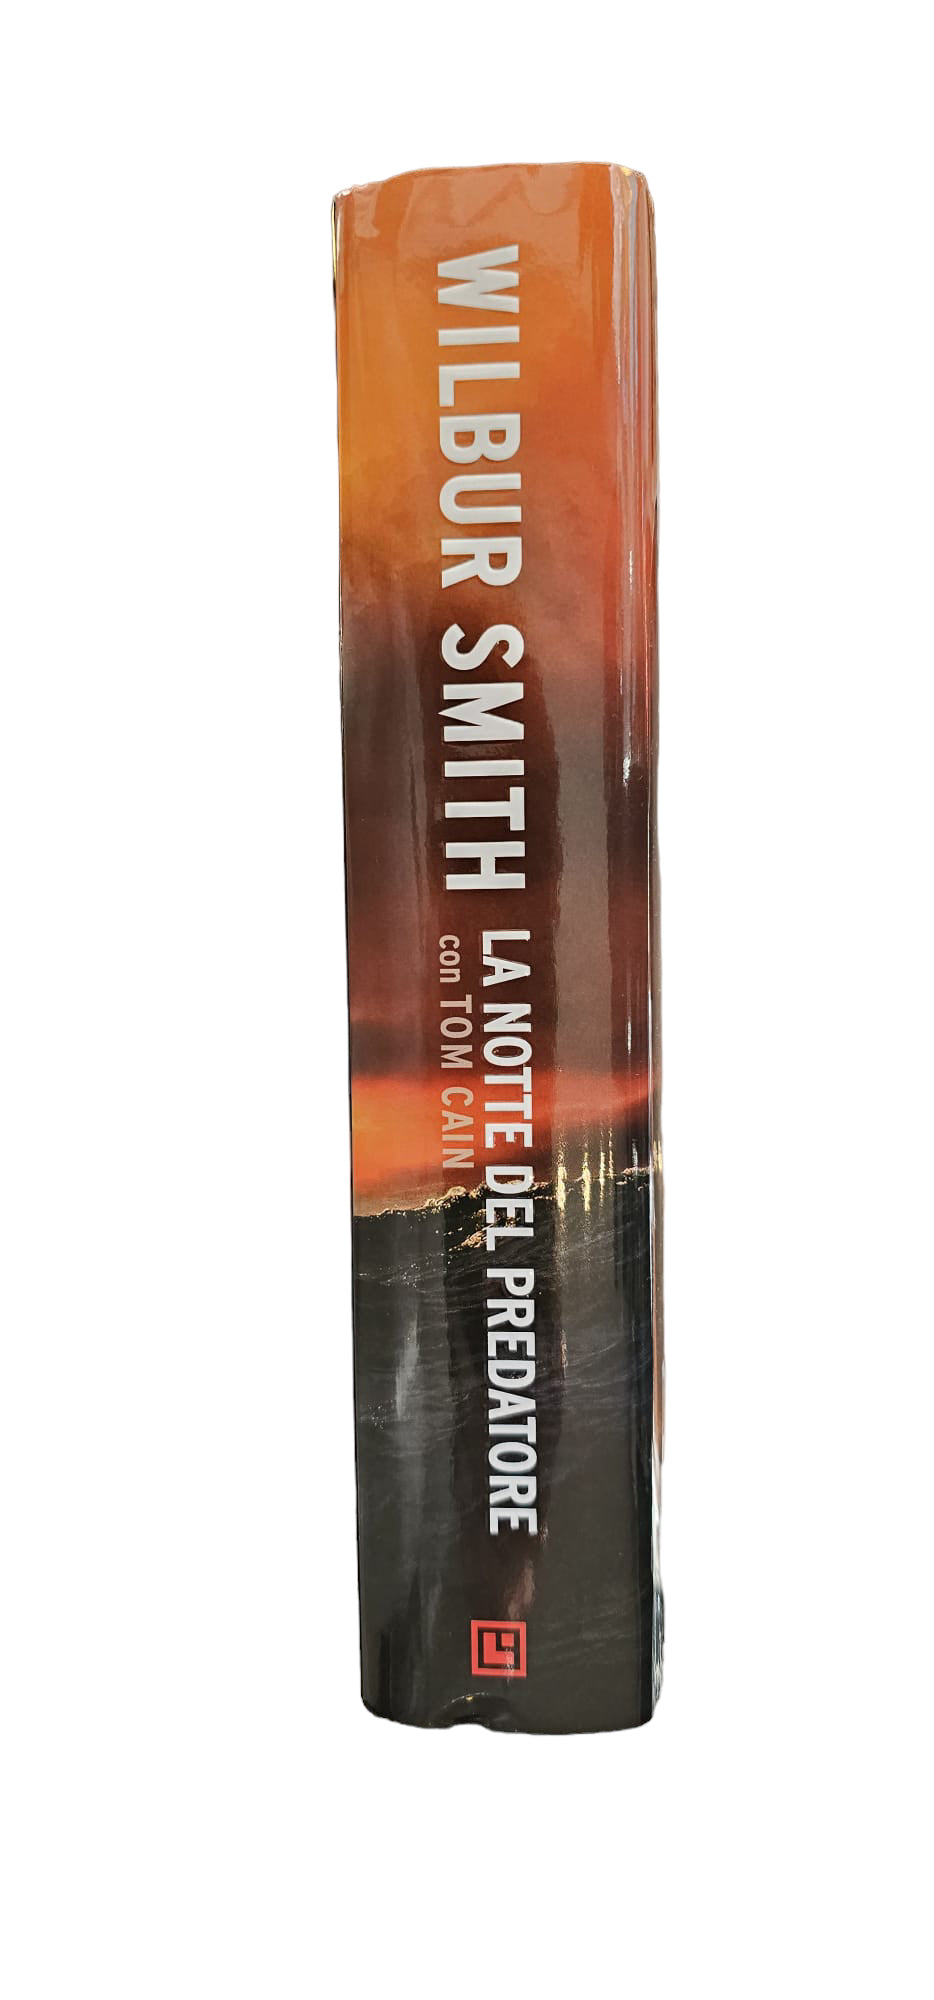 WILBUR SMITH LA NOTTE DEL PREDATORE, 2016